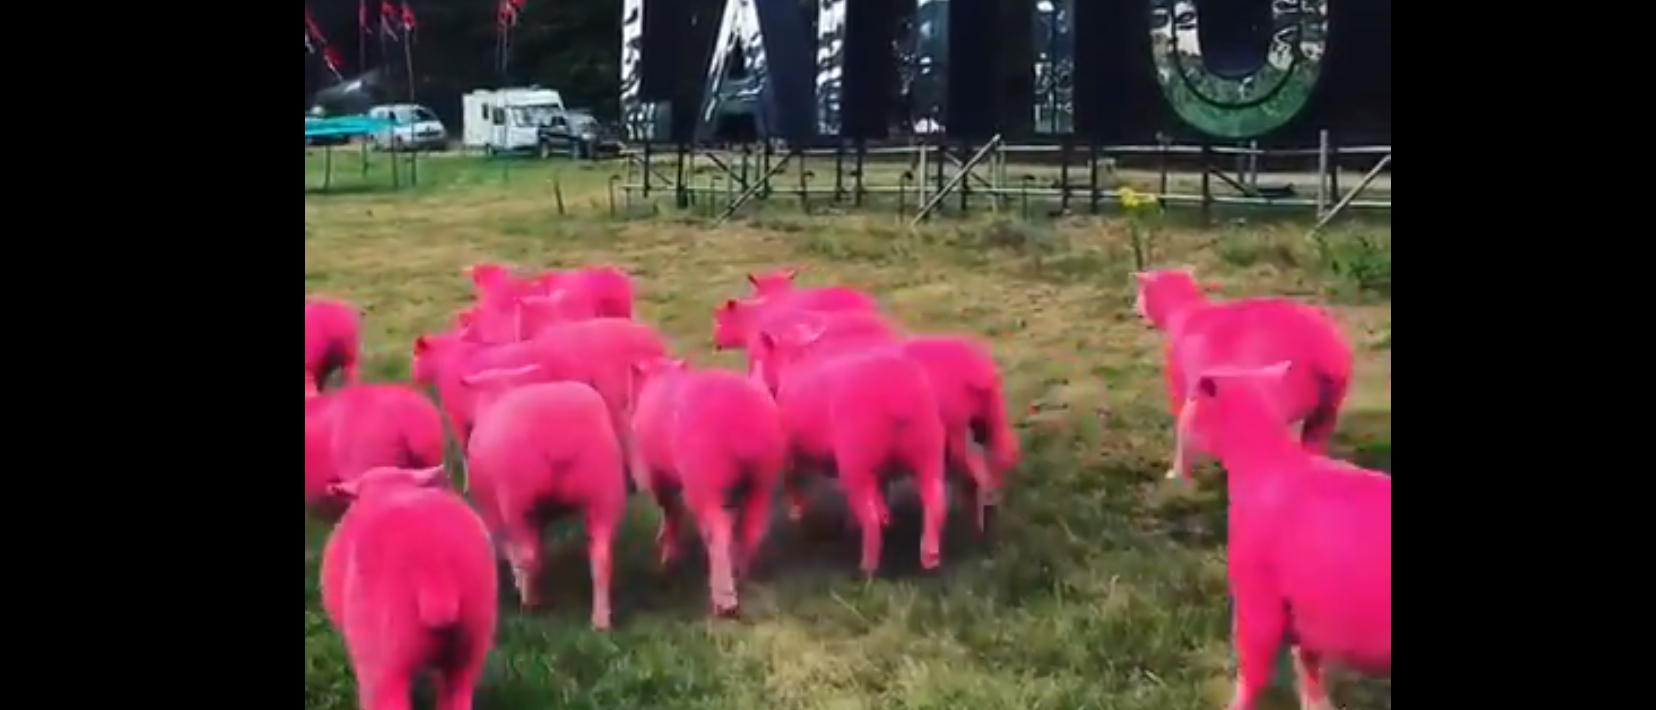 Festival de música é imensamente criticado por campanha com ovelhas tingidas de rosa